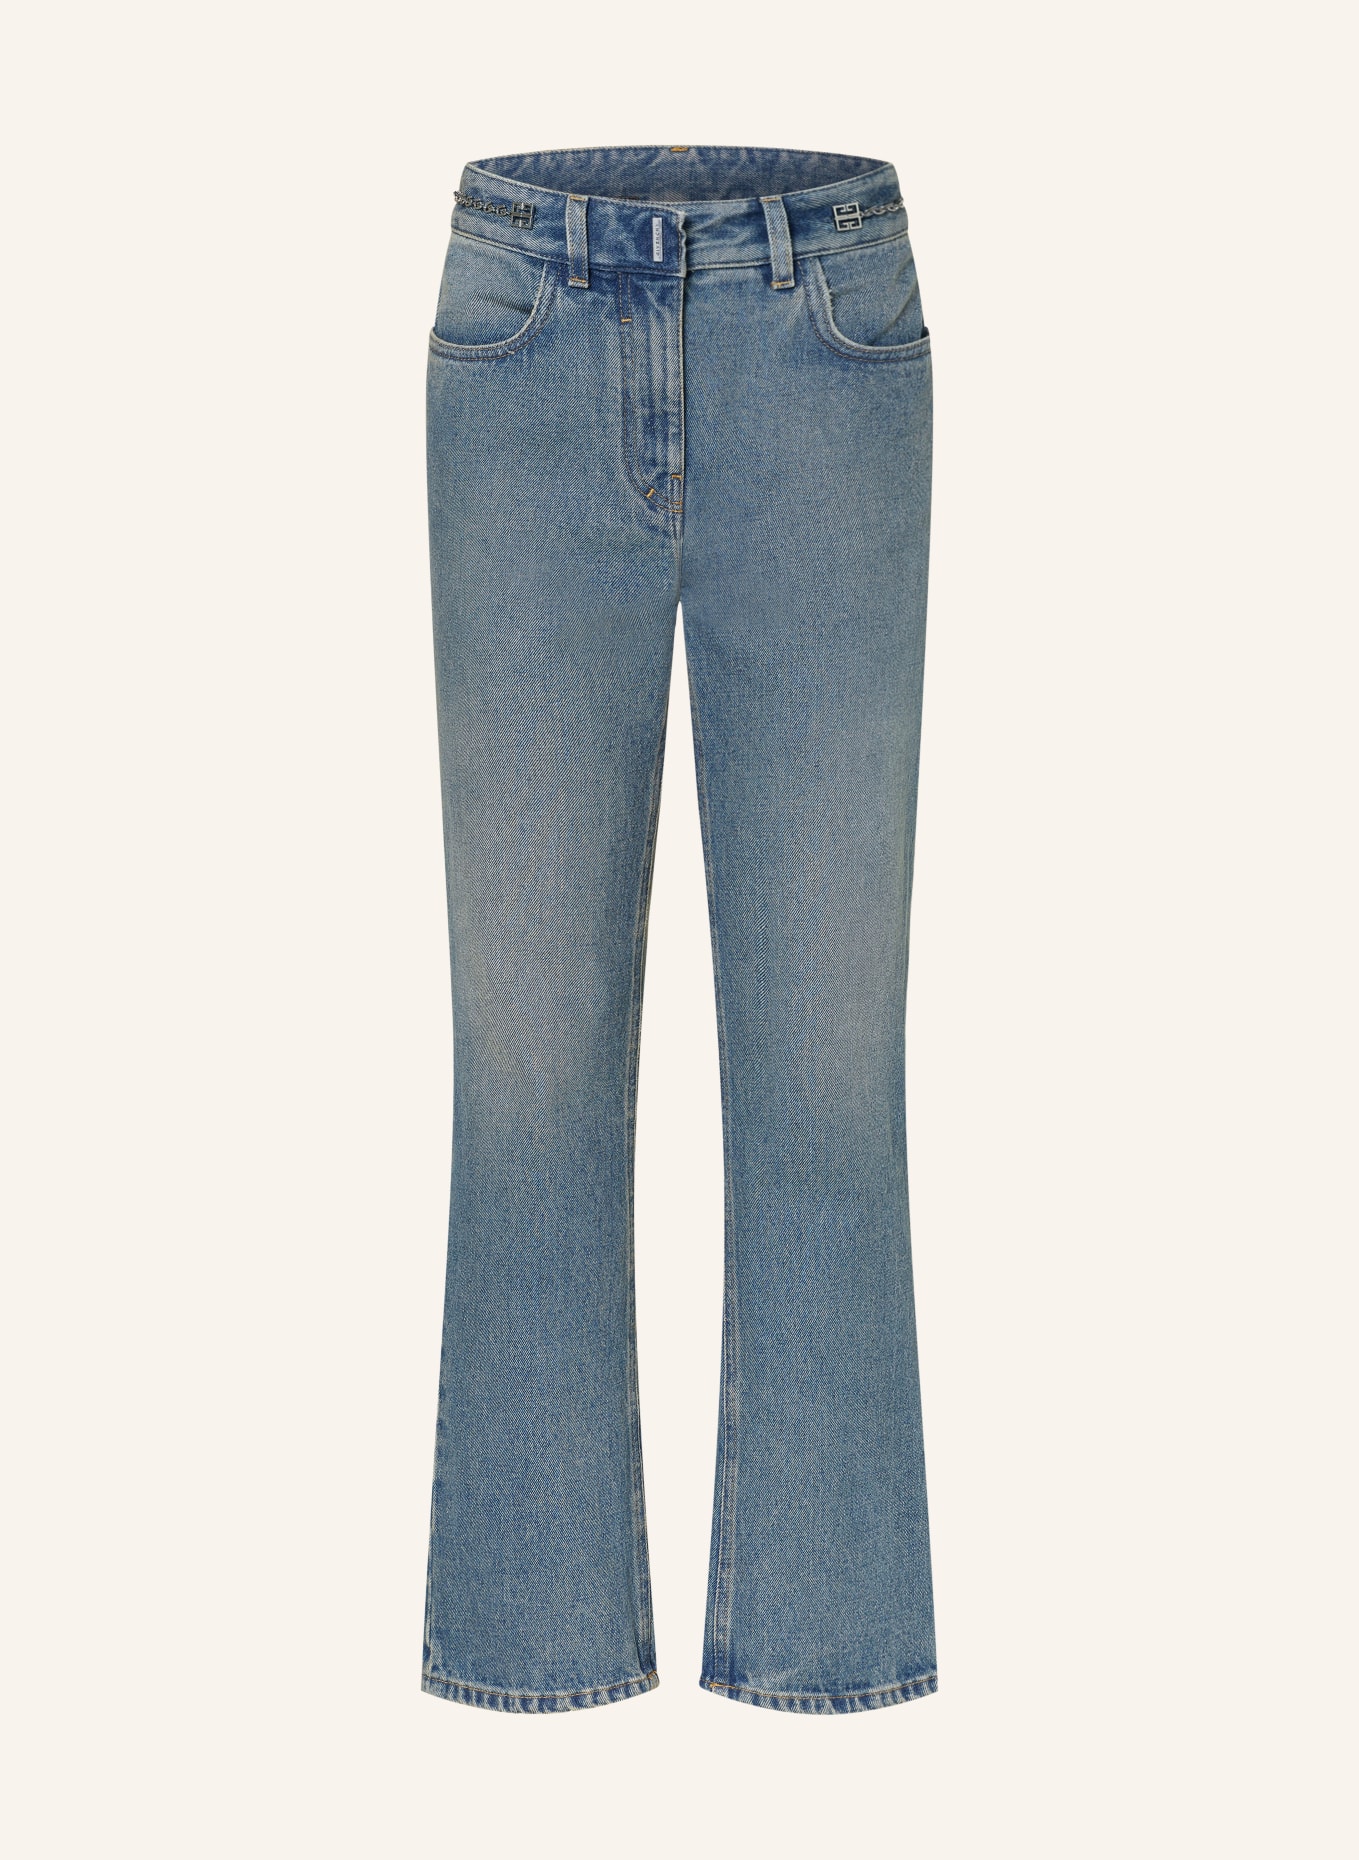 GIVENCHY Straight Jeans, Farbe: 420 MEDIUM BLUE (Bild 1)